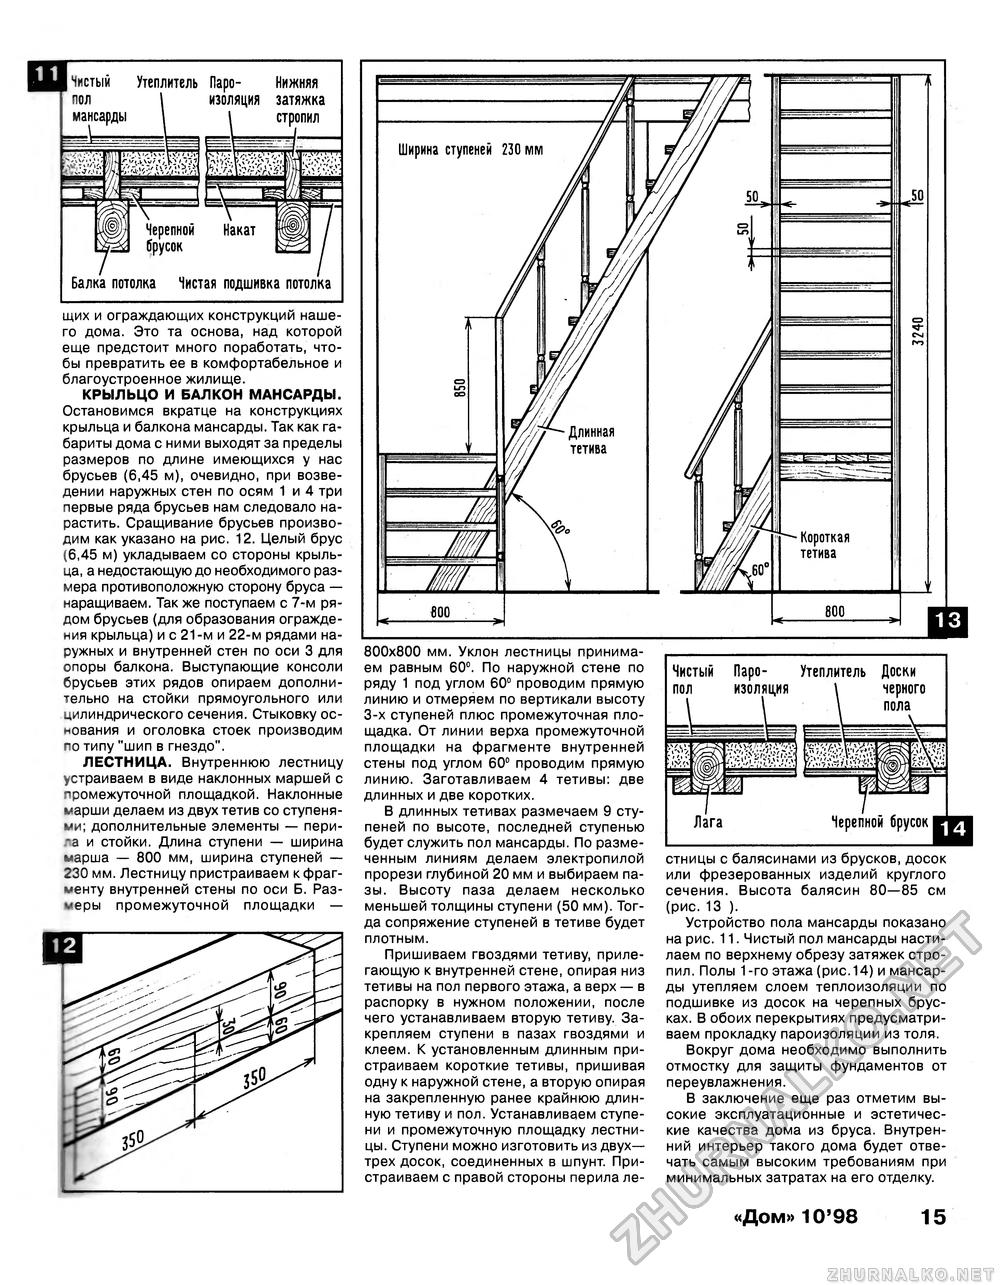 Дом 1998-10, страница 15